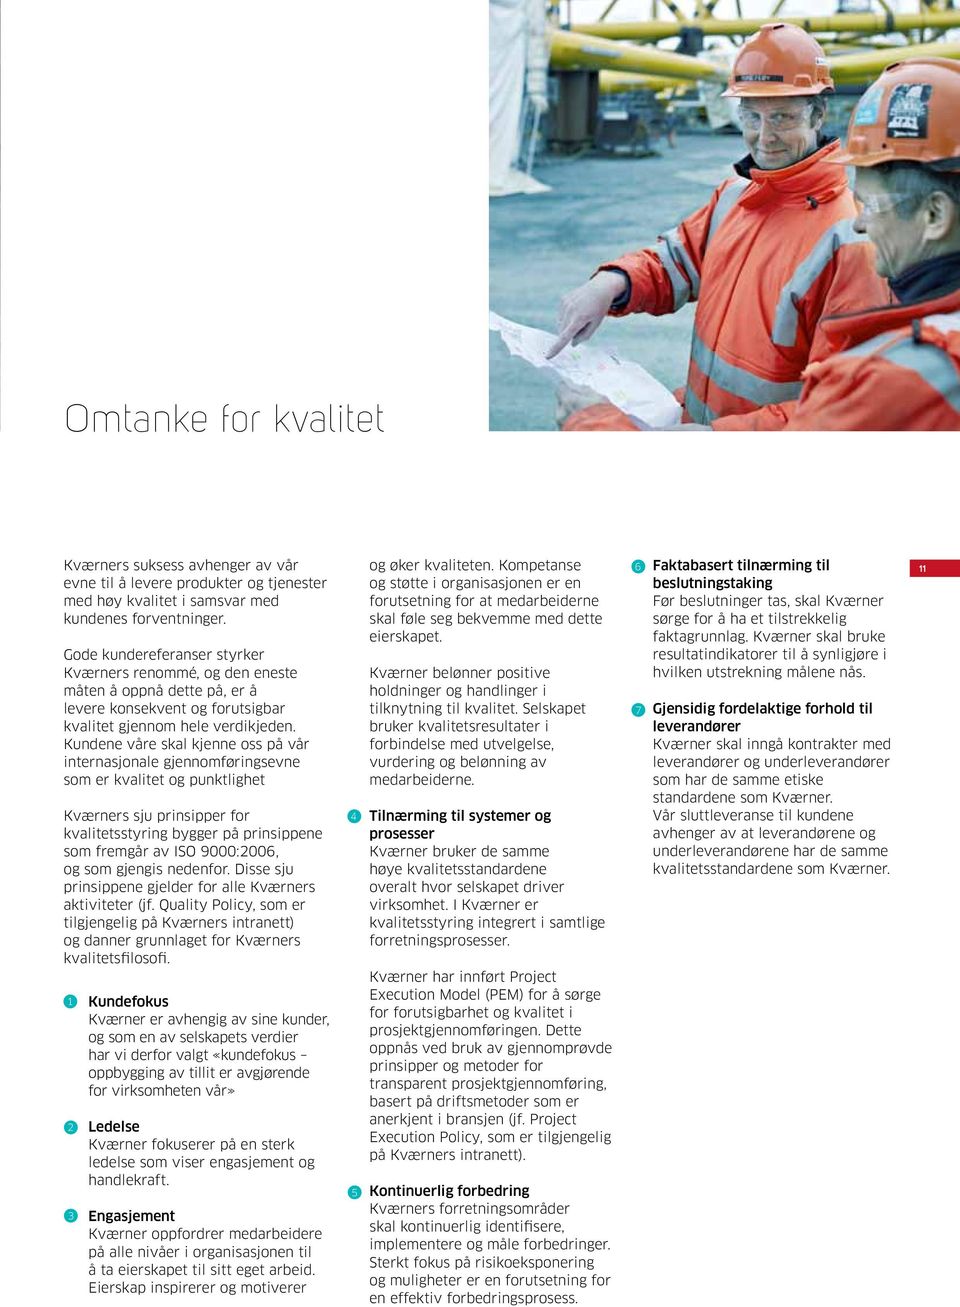 Kundene våre skal kjenne oss på vår internasjonale gjennomføringsevne som er kvalitet og punktlighet Kværners sju prinsipper for kvalitetsstyring bygger på prinsippene som fremgår av ISO 9000:2006,